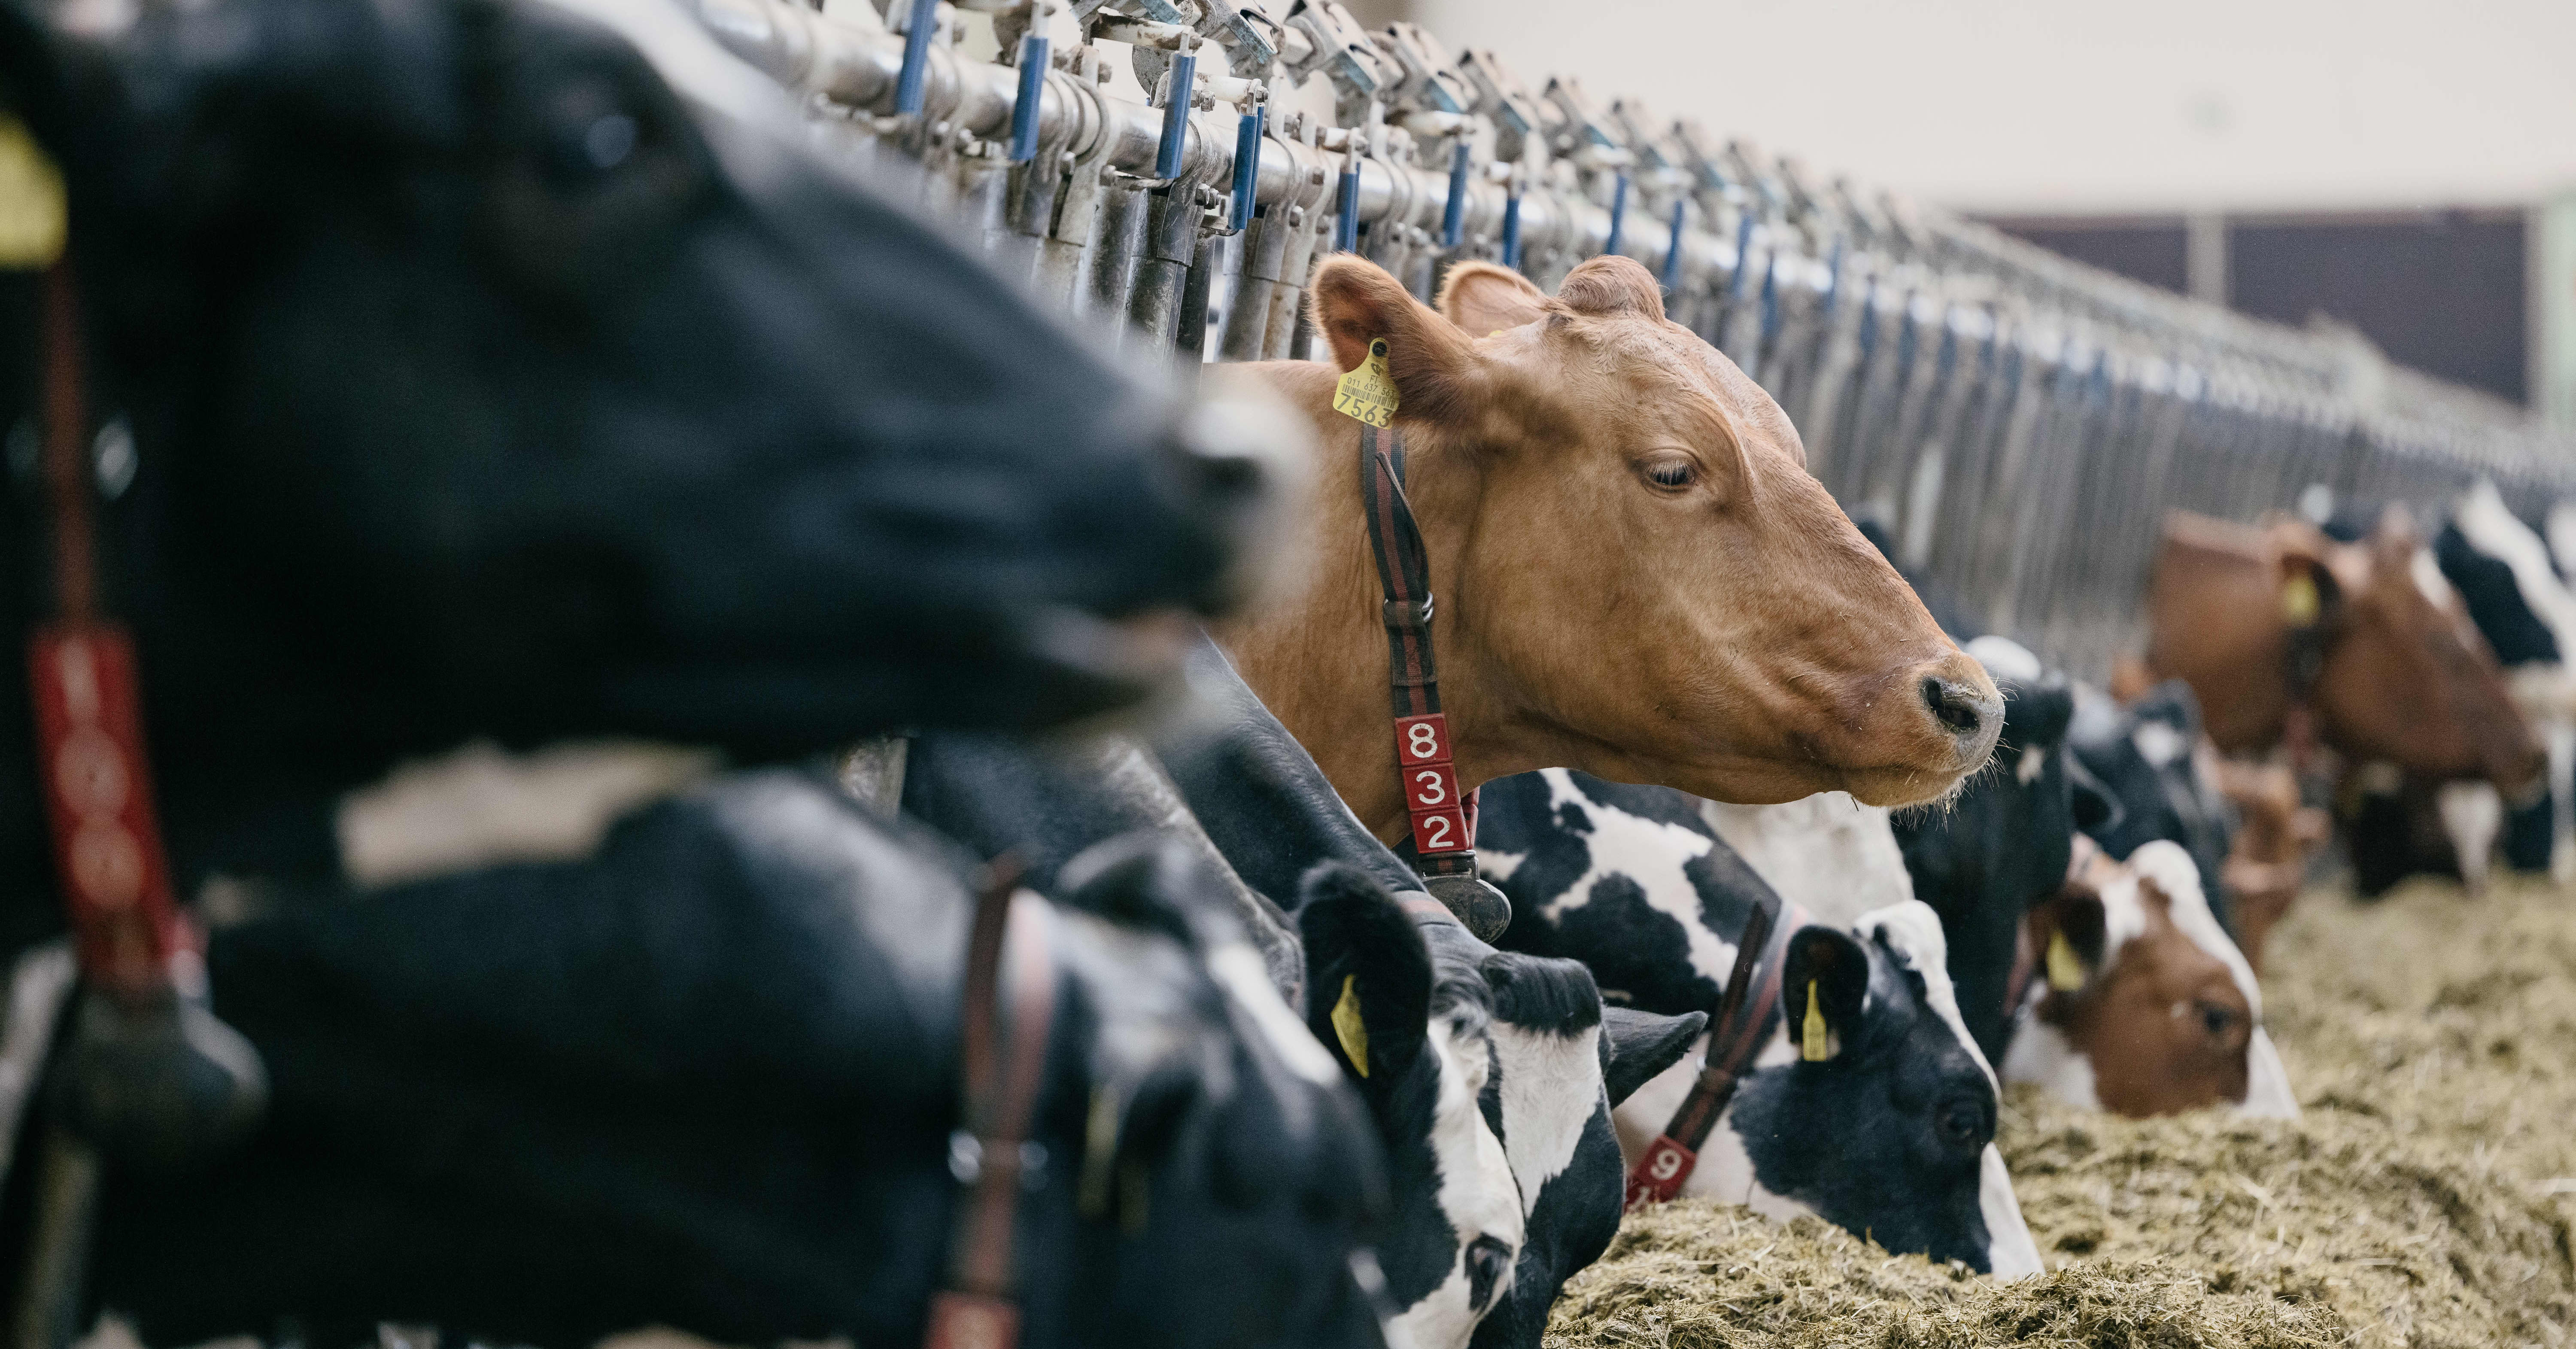 Miten maito voi olla päästötöntä? Ruotsin kuluttaja-asiamies haastoi Arlan oikeuteen maidon mainostamisesta nollapäästöisenä